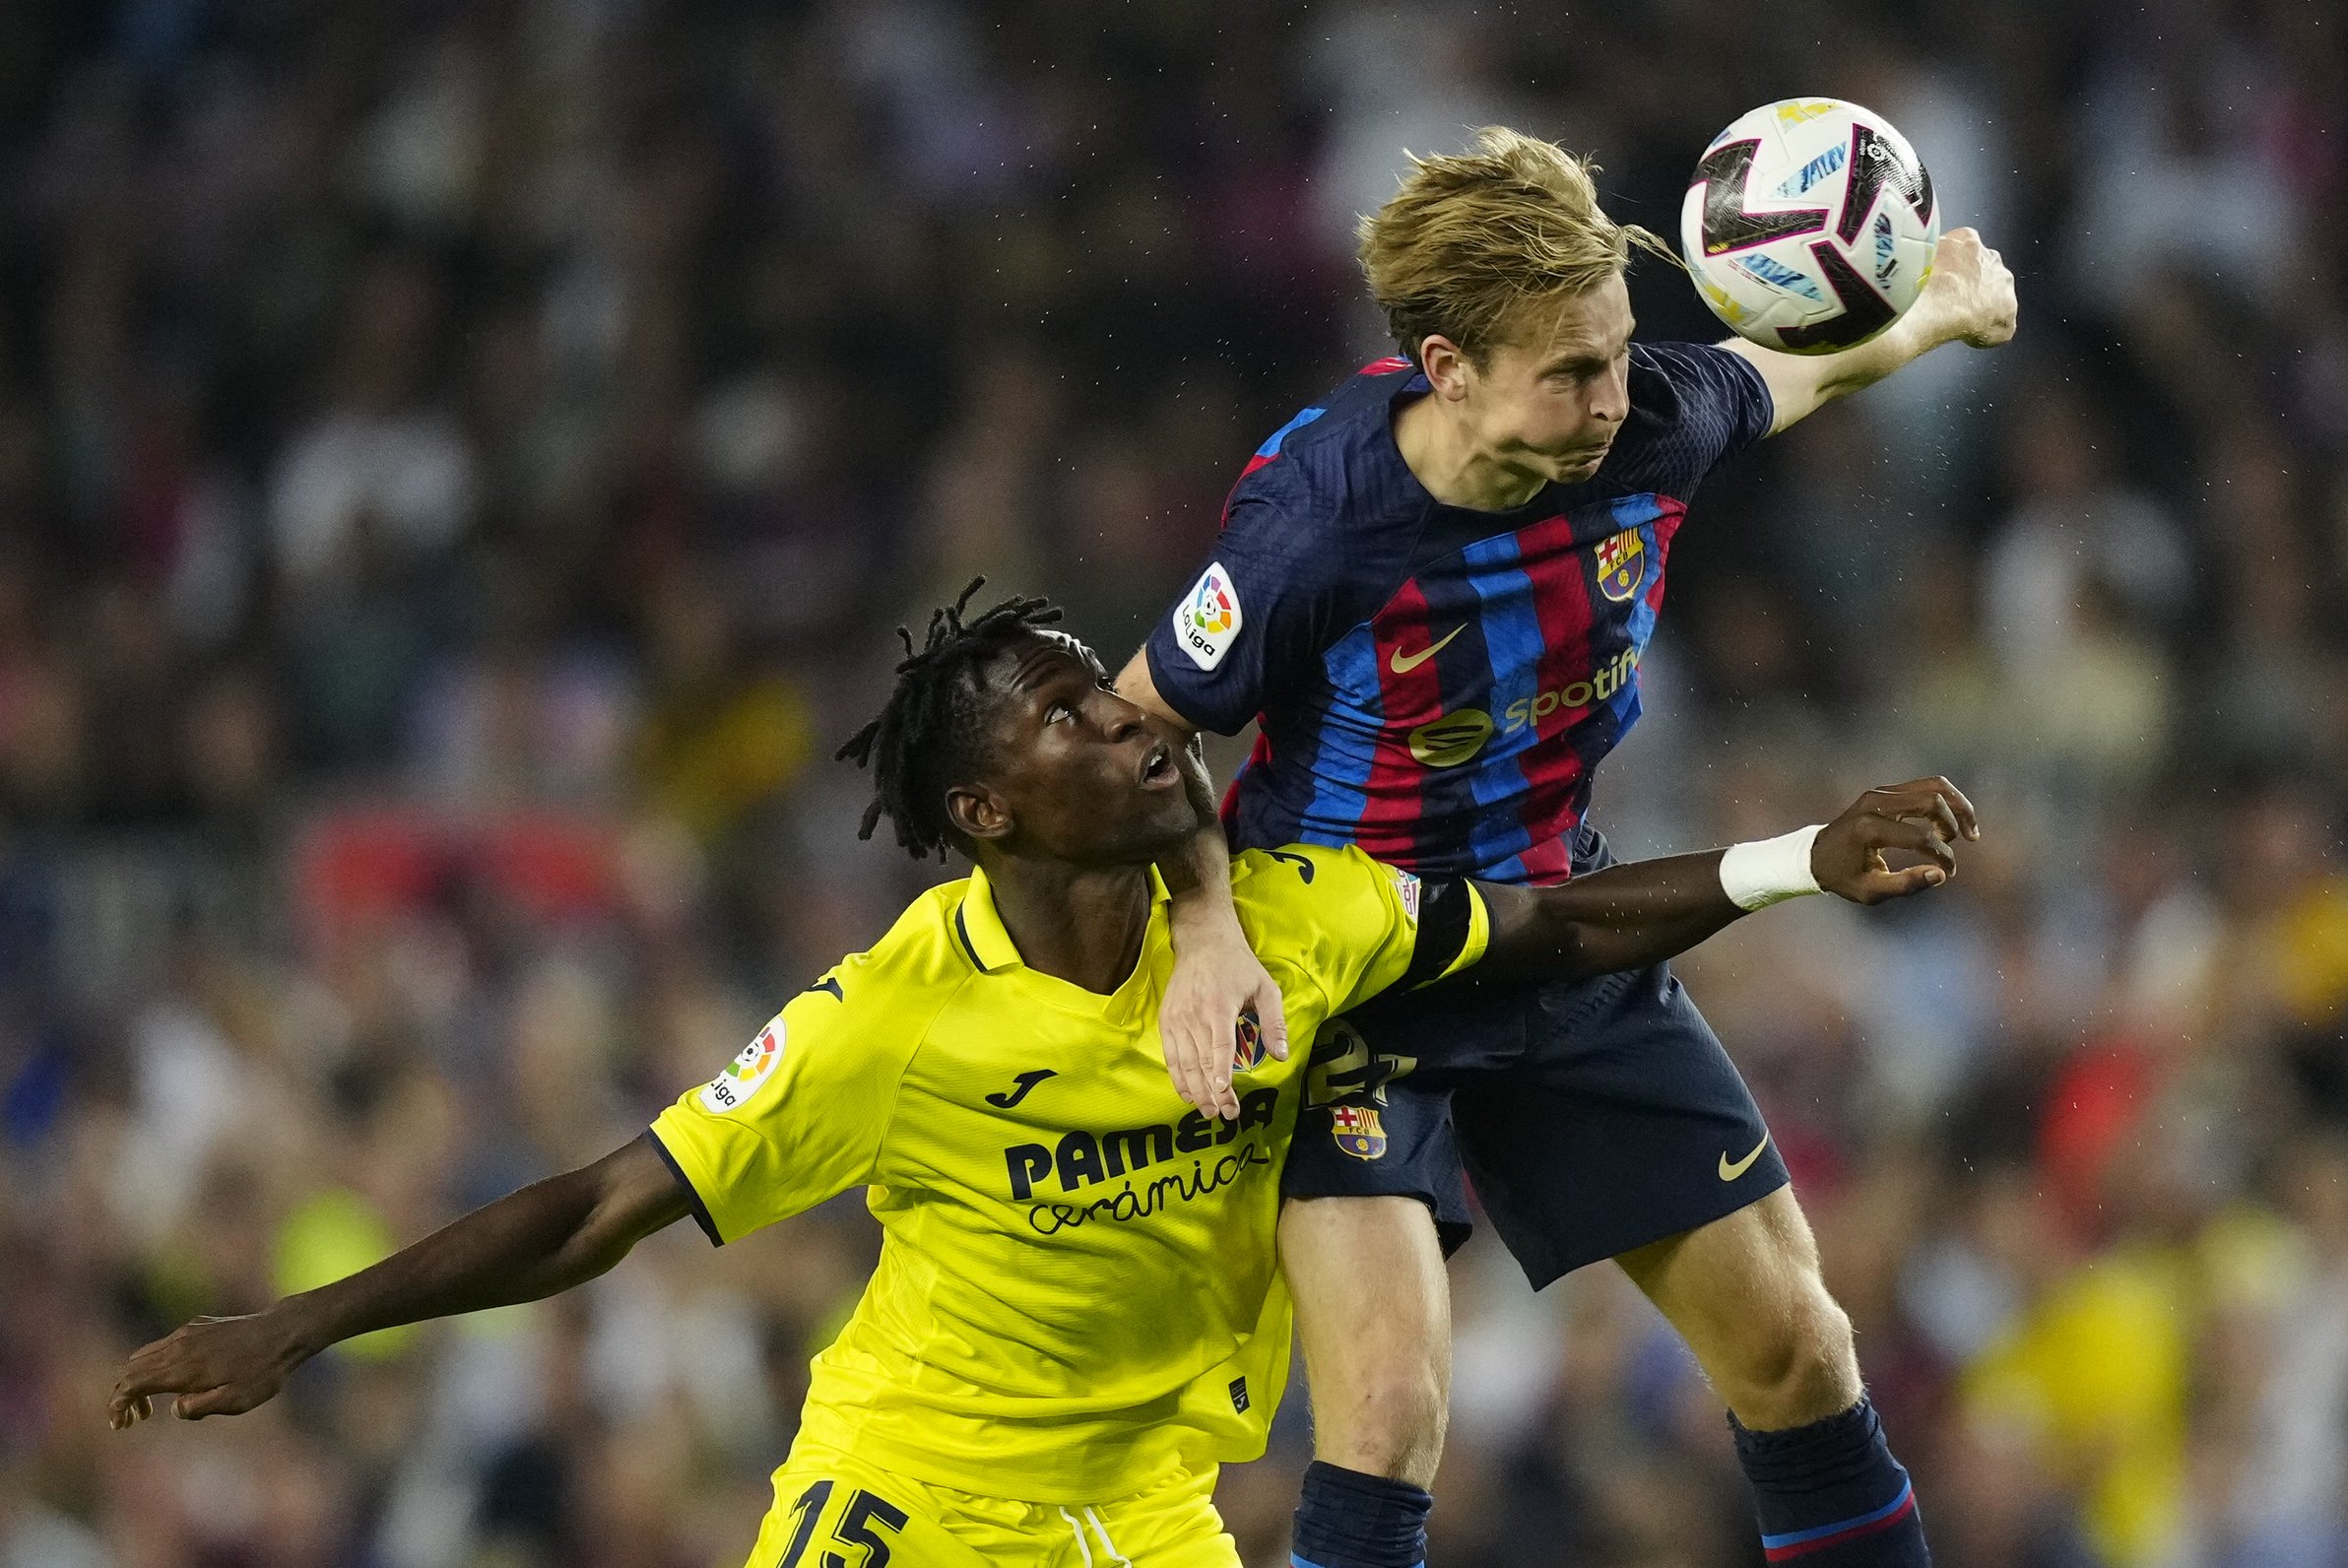 De Jong troba un enemic inesperat dins del Barça: el seu gran amic l'ha traït